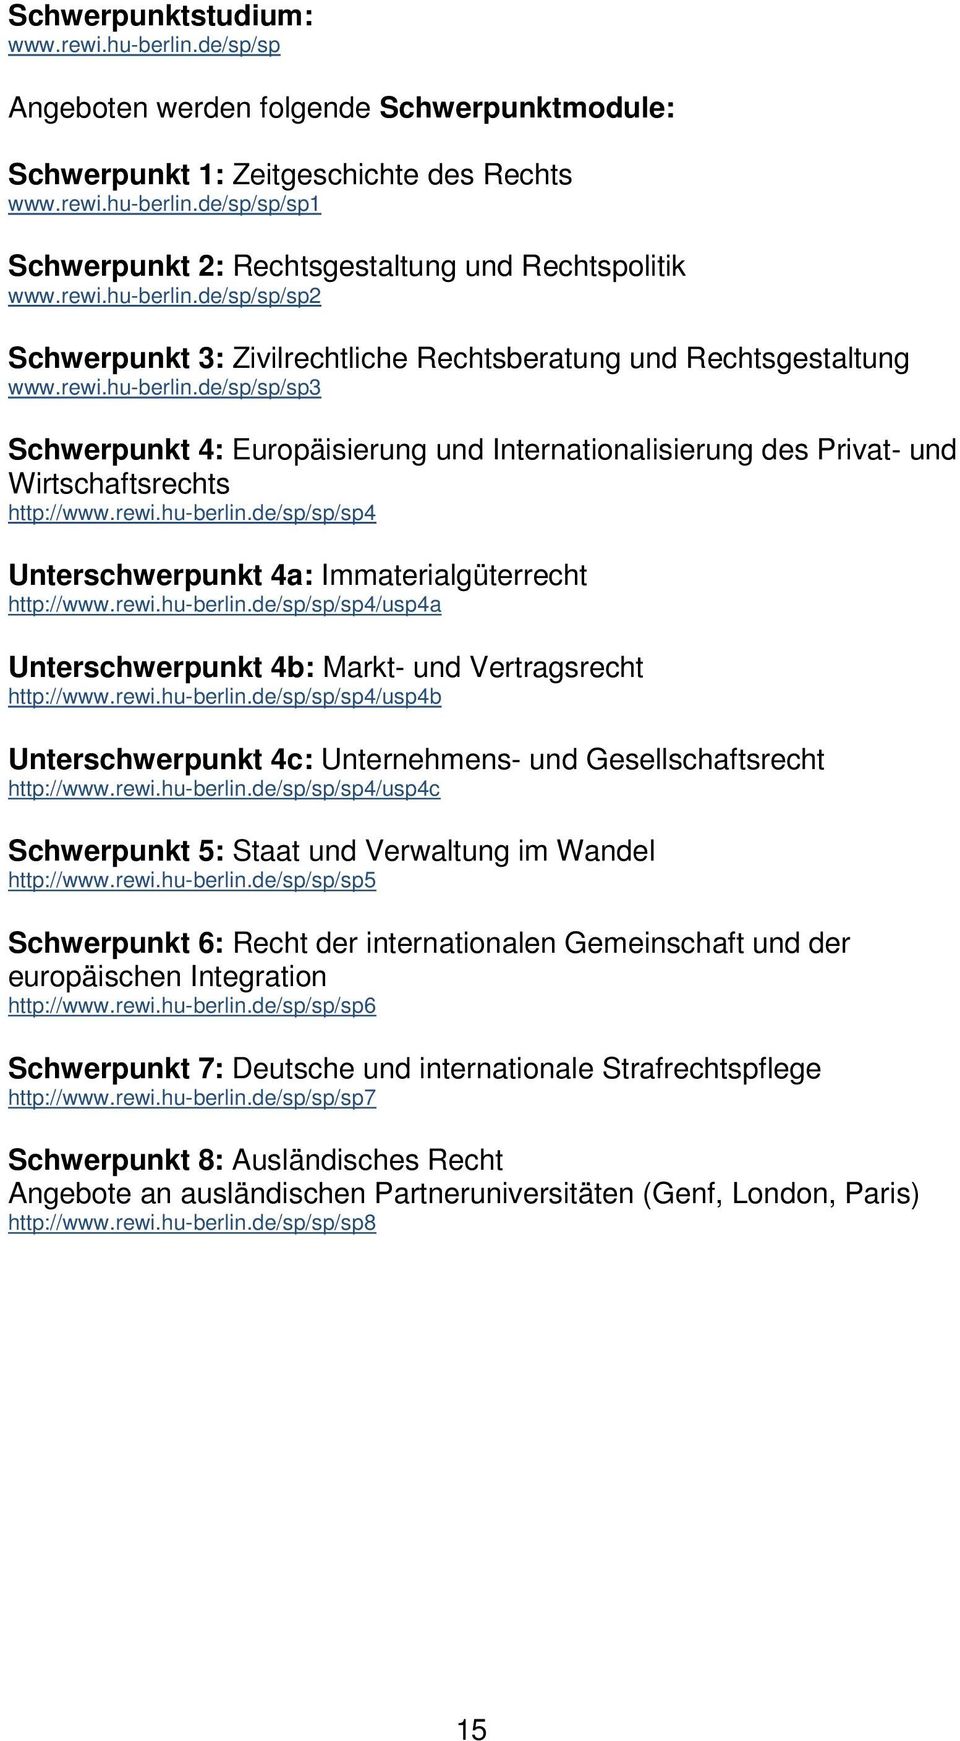 rewi.hu-berlin.de/sp/sp/sp4 Unterschwerpunkt 4a: Immaterialgüterrecht http://www.rewi.hu-berlin.de/sp/sp/sp4/usp4a Unterschwerpunkt 4b: Markt- und Vertragsrecht http://www.rewi.hu-berlin.de/sp/sp/sp4/usp4b Unterschwerpunkt 4c: Unternehmens- und Gesellschaftsrecht http://www.